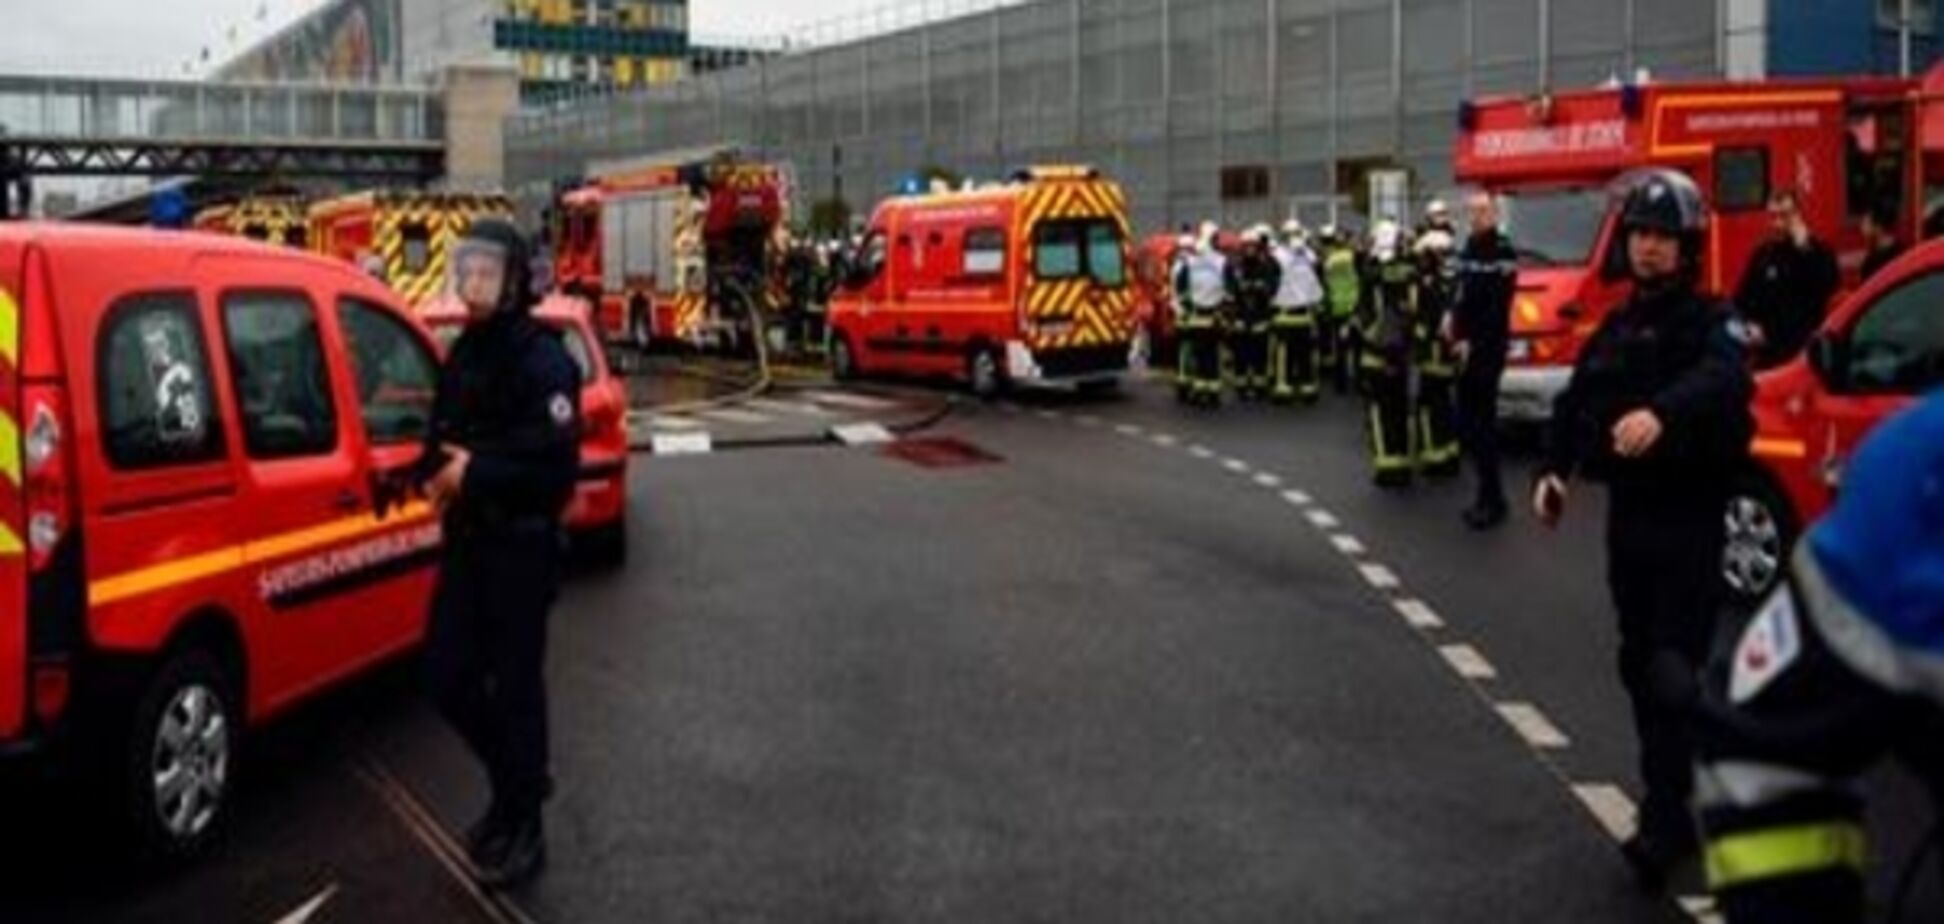 Напад в аеропорту Орлі: французькі слідчі підозрюють терористичний мотив